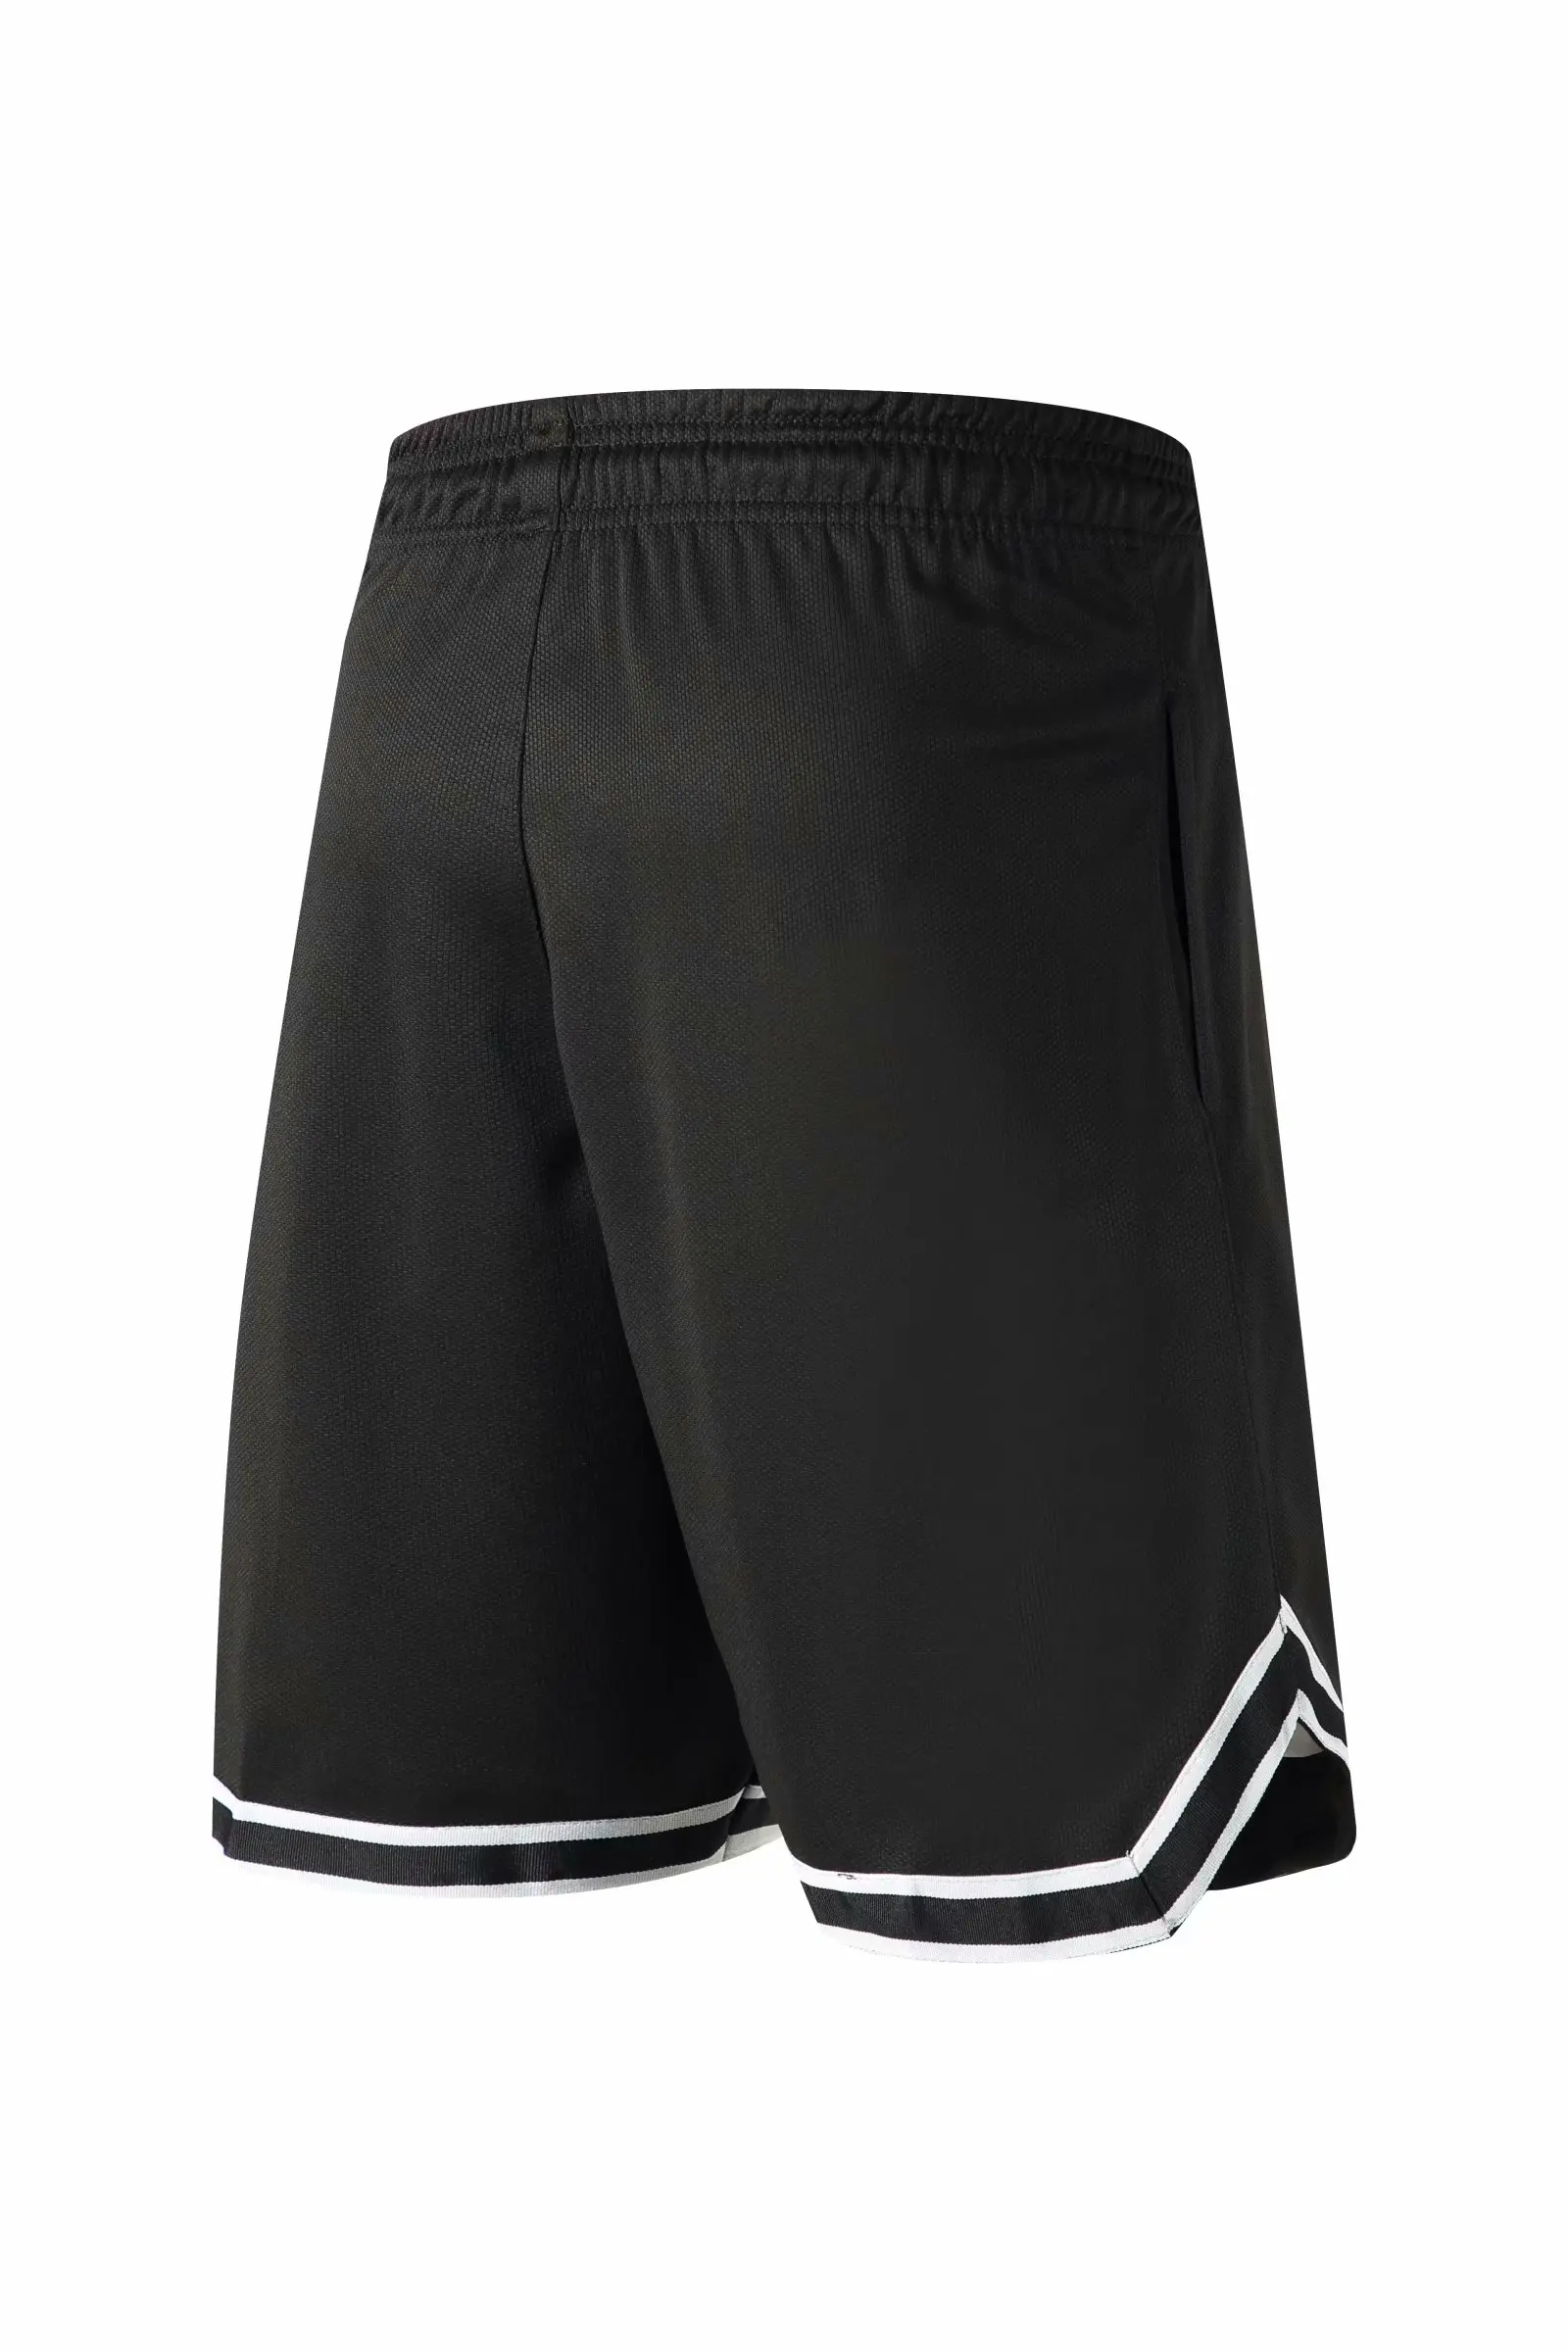 Баскетбольные шорты, дышащие спортивные шорты для бега, спортивные шорты свободного кроя, черные/красные пляжные шорты